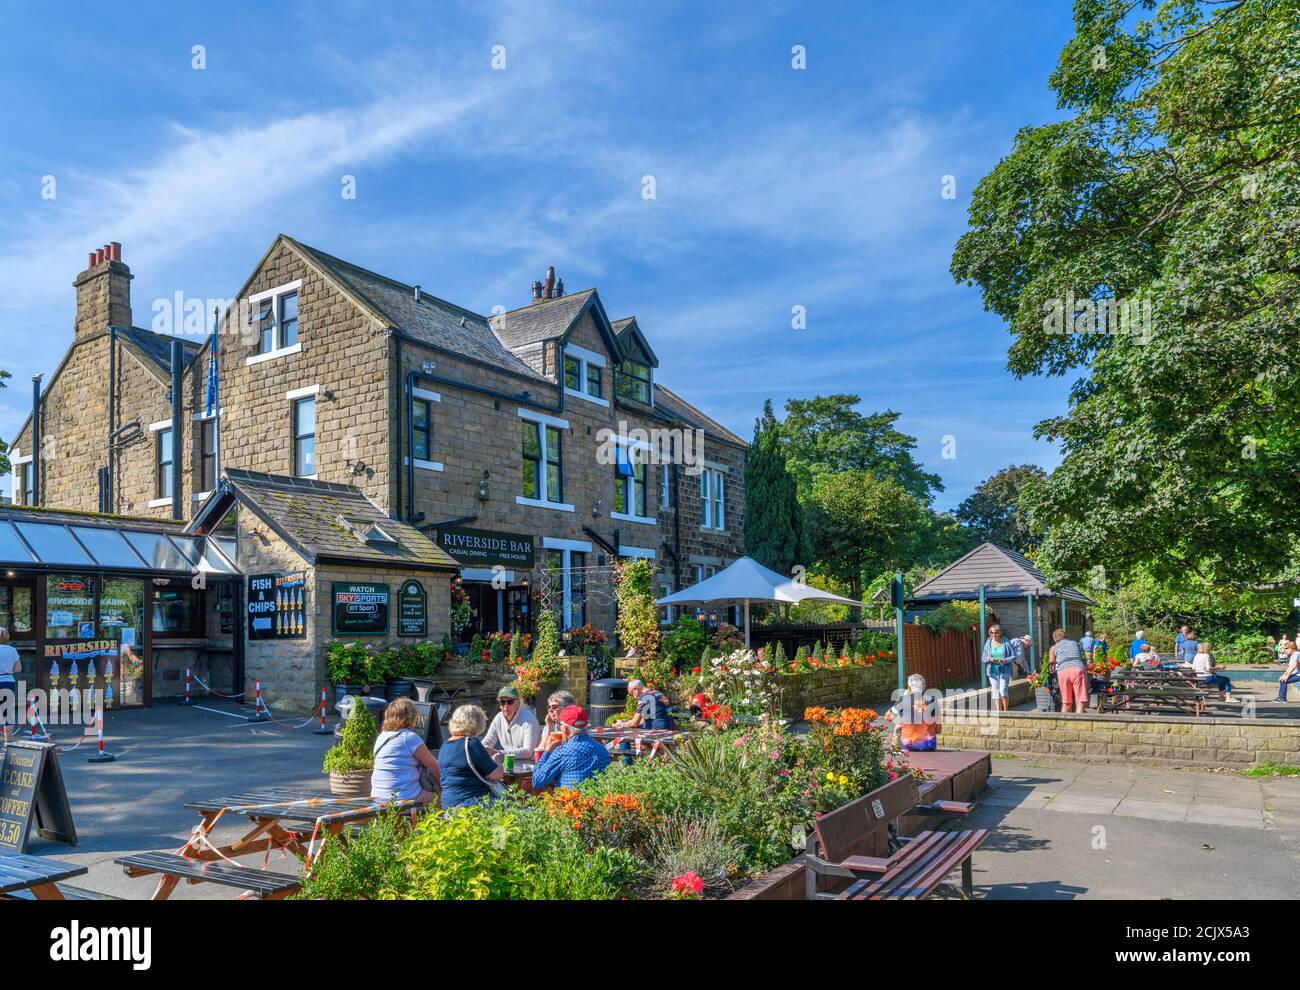 Leute, die vor der Riverside Bar im Riverside Hotel am Dales Way, Ilkley, North Yorkshire, England, Großbritannien, sitzen. Stockfoto